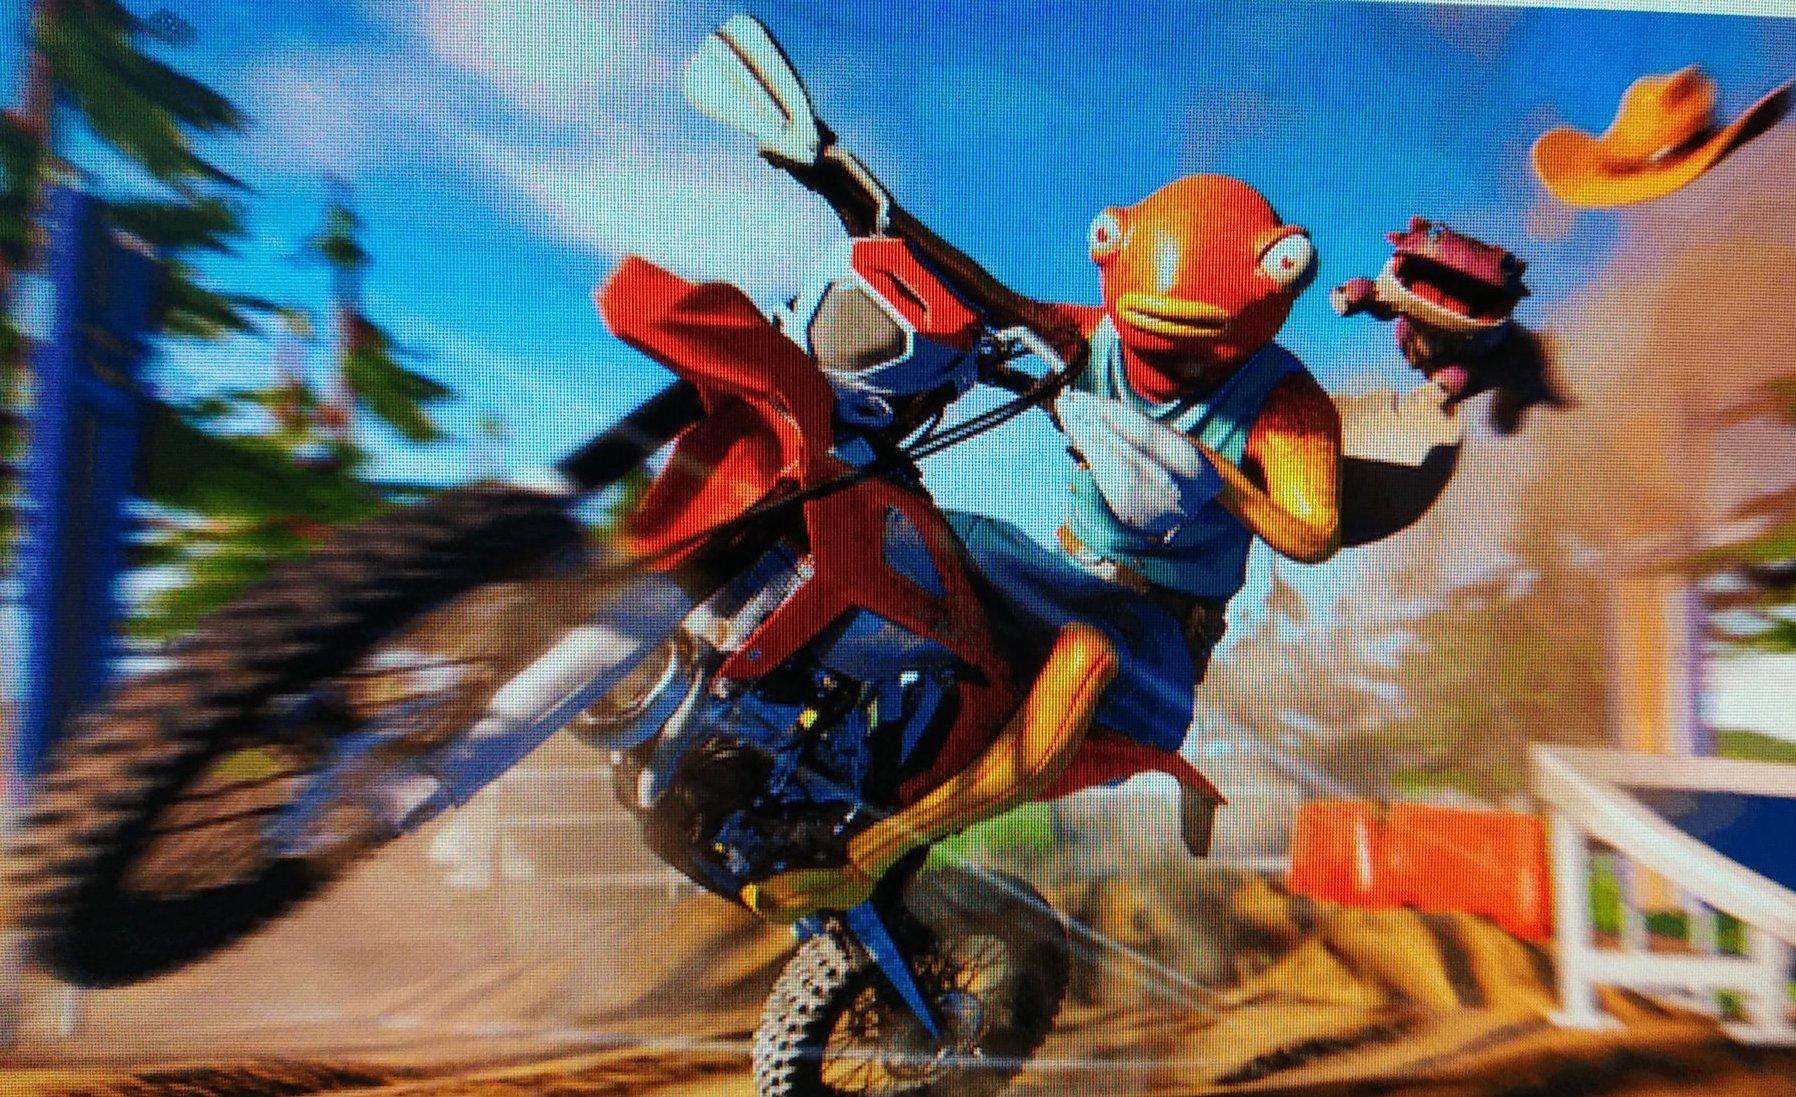 Uma imagem vazada de uma motocicleta em 'Fortnite'